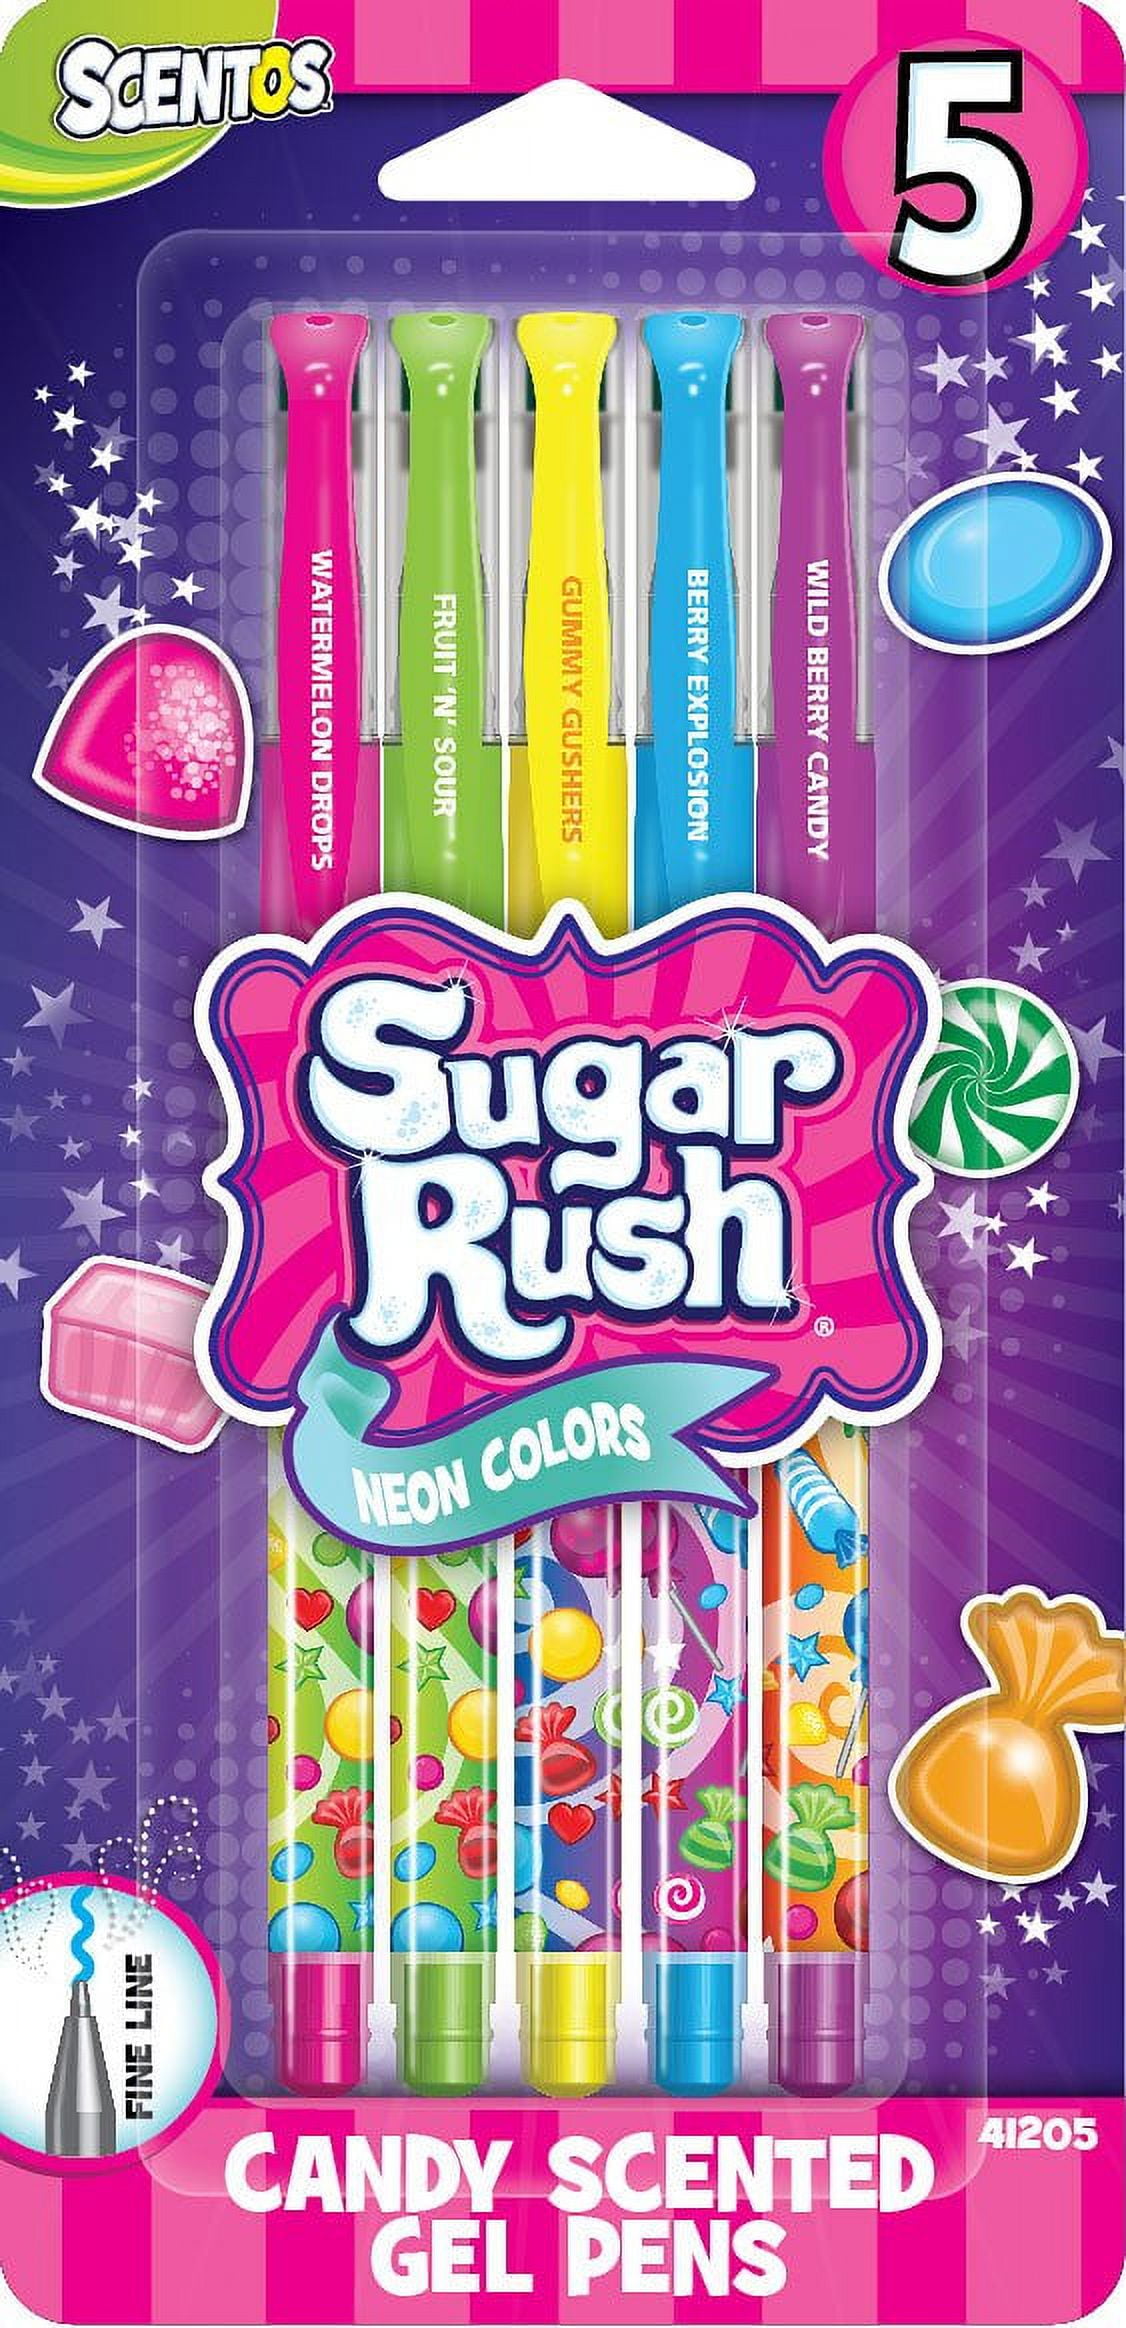 Scented Sugar Rush Gel Pens - 24 Pack